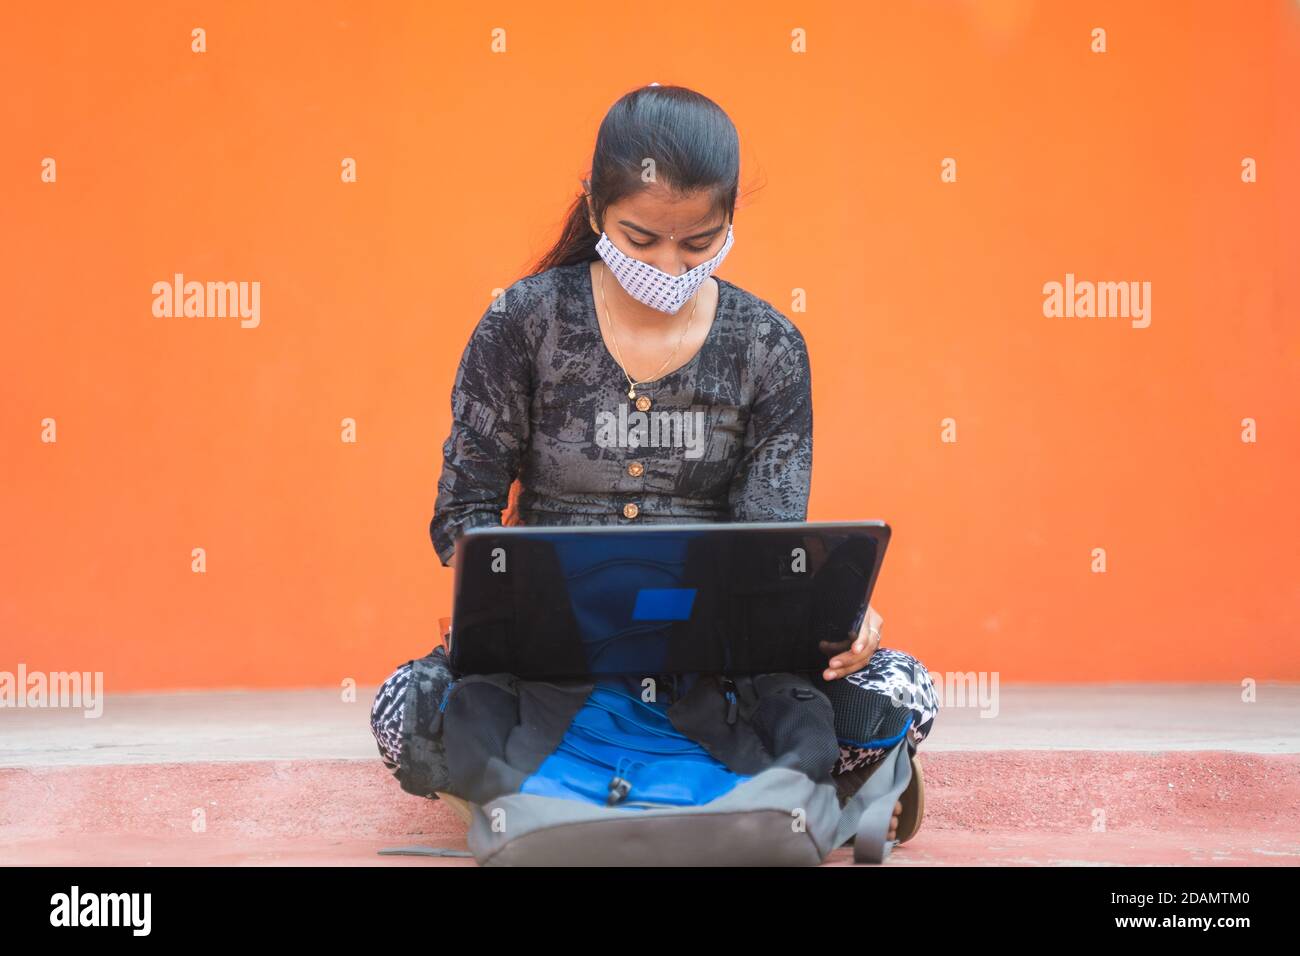 Jeune fille étudiant dans le masque médical occupé à travailler sur ordinateur portable dans le couloir d'université ou campus d'université - concept de la réouverture d'université, nouvelle normale en raison de Banque D'Images